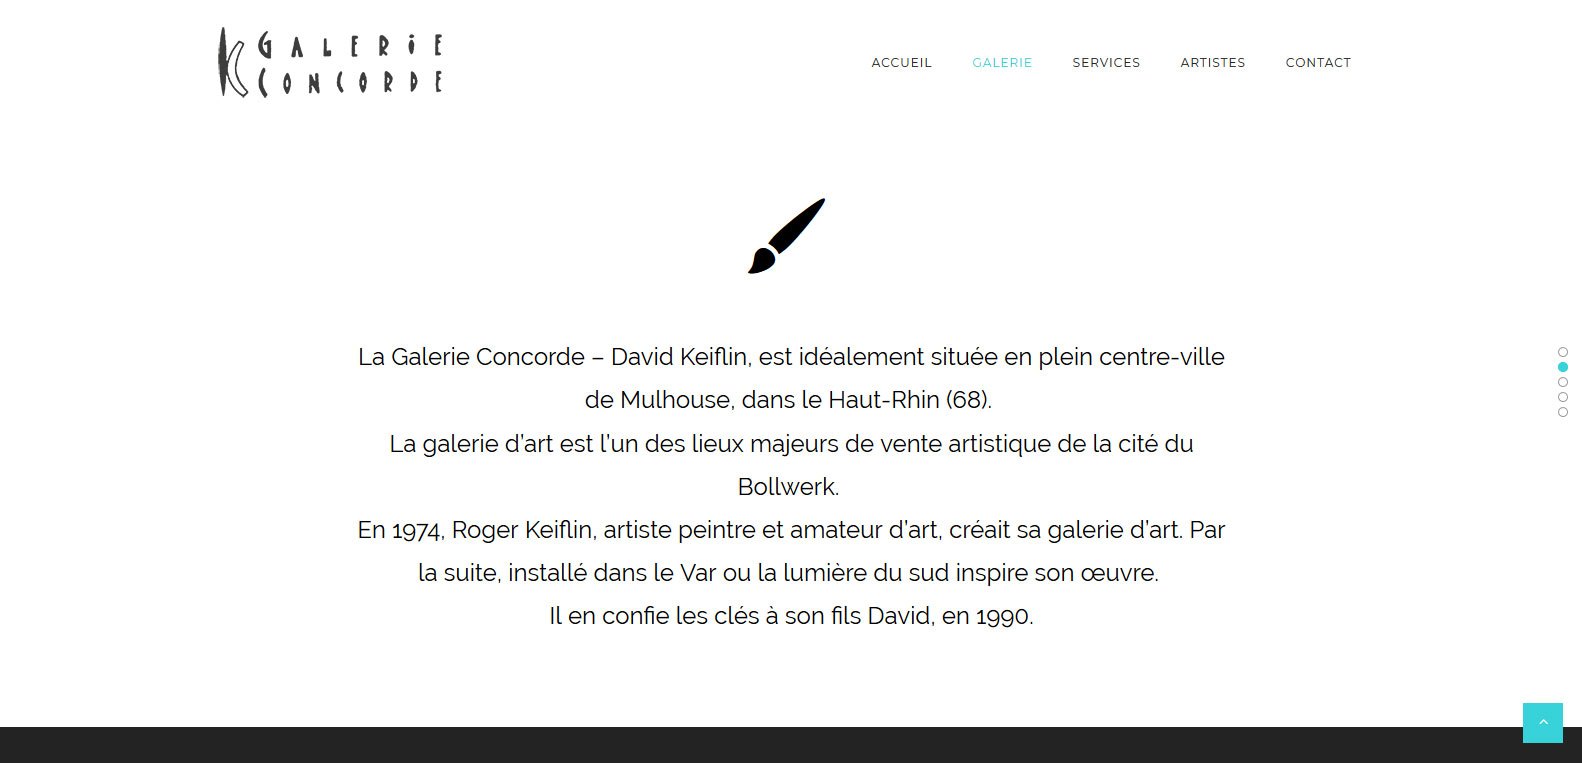 Place et histoire de la galerie concorde, client Karedess agency, une agence digitale situé à Mulhouse dans le haut-rhin